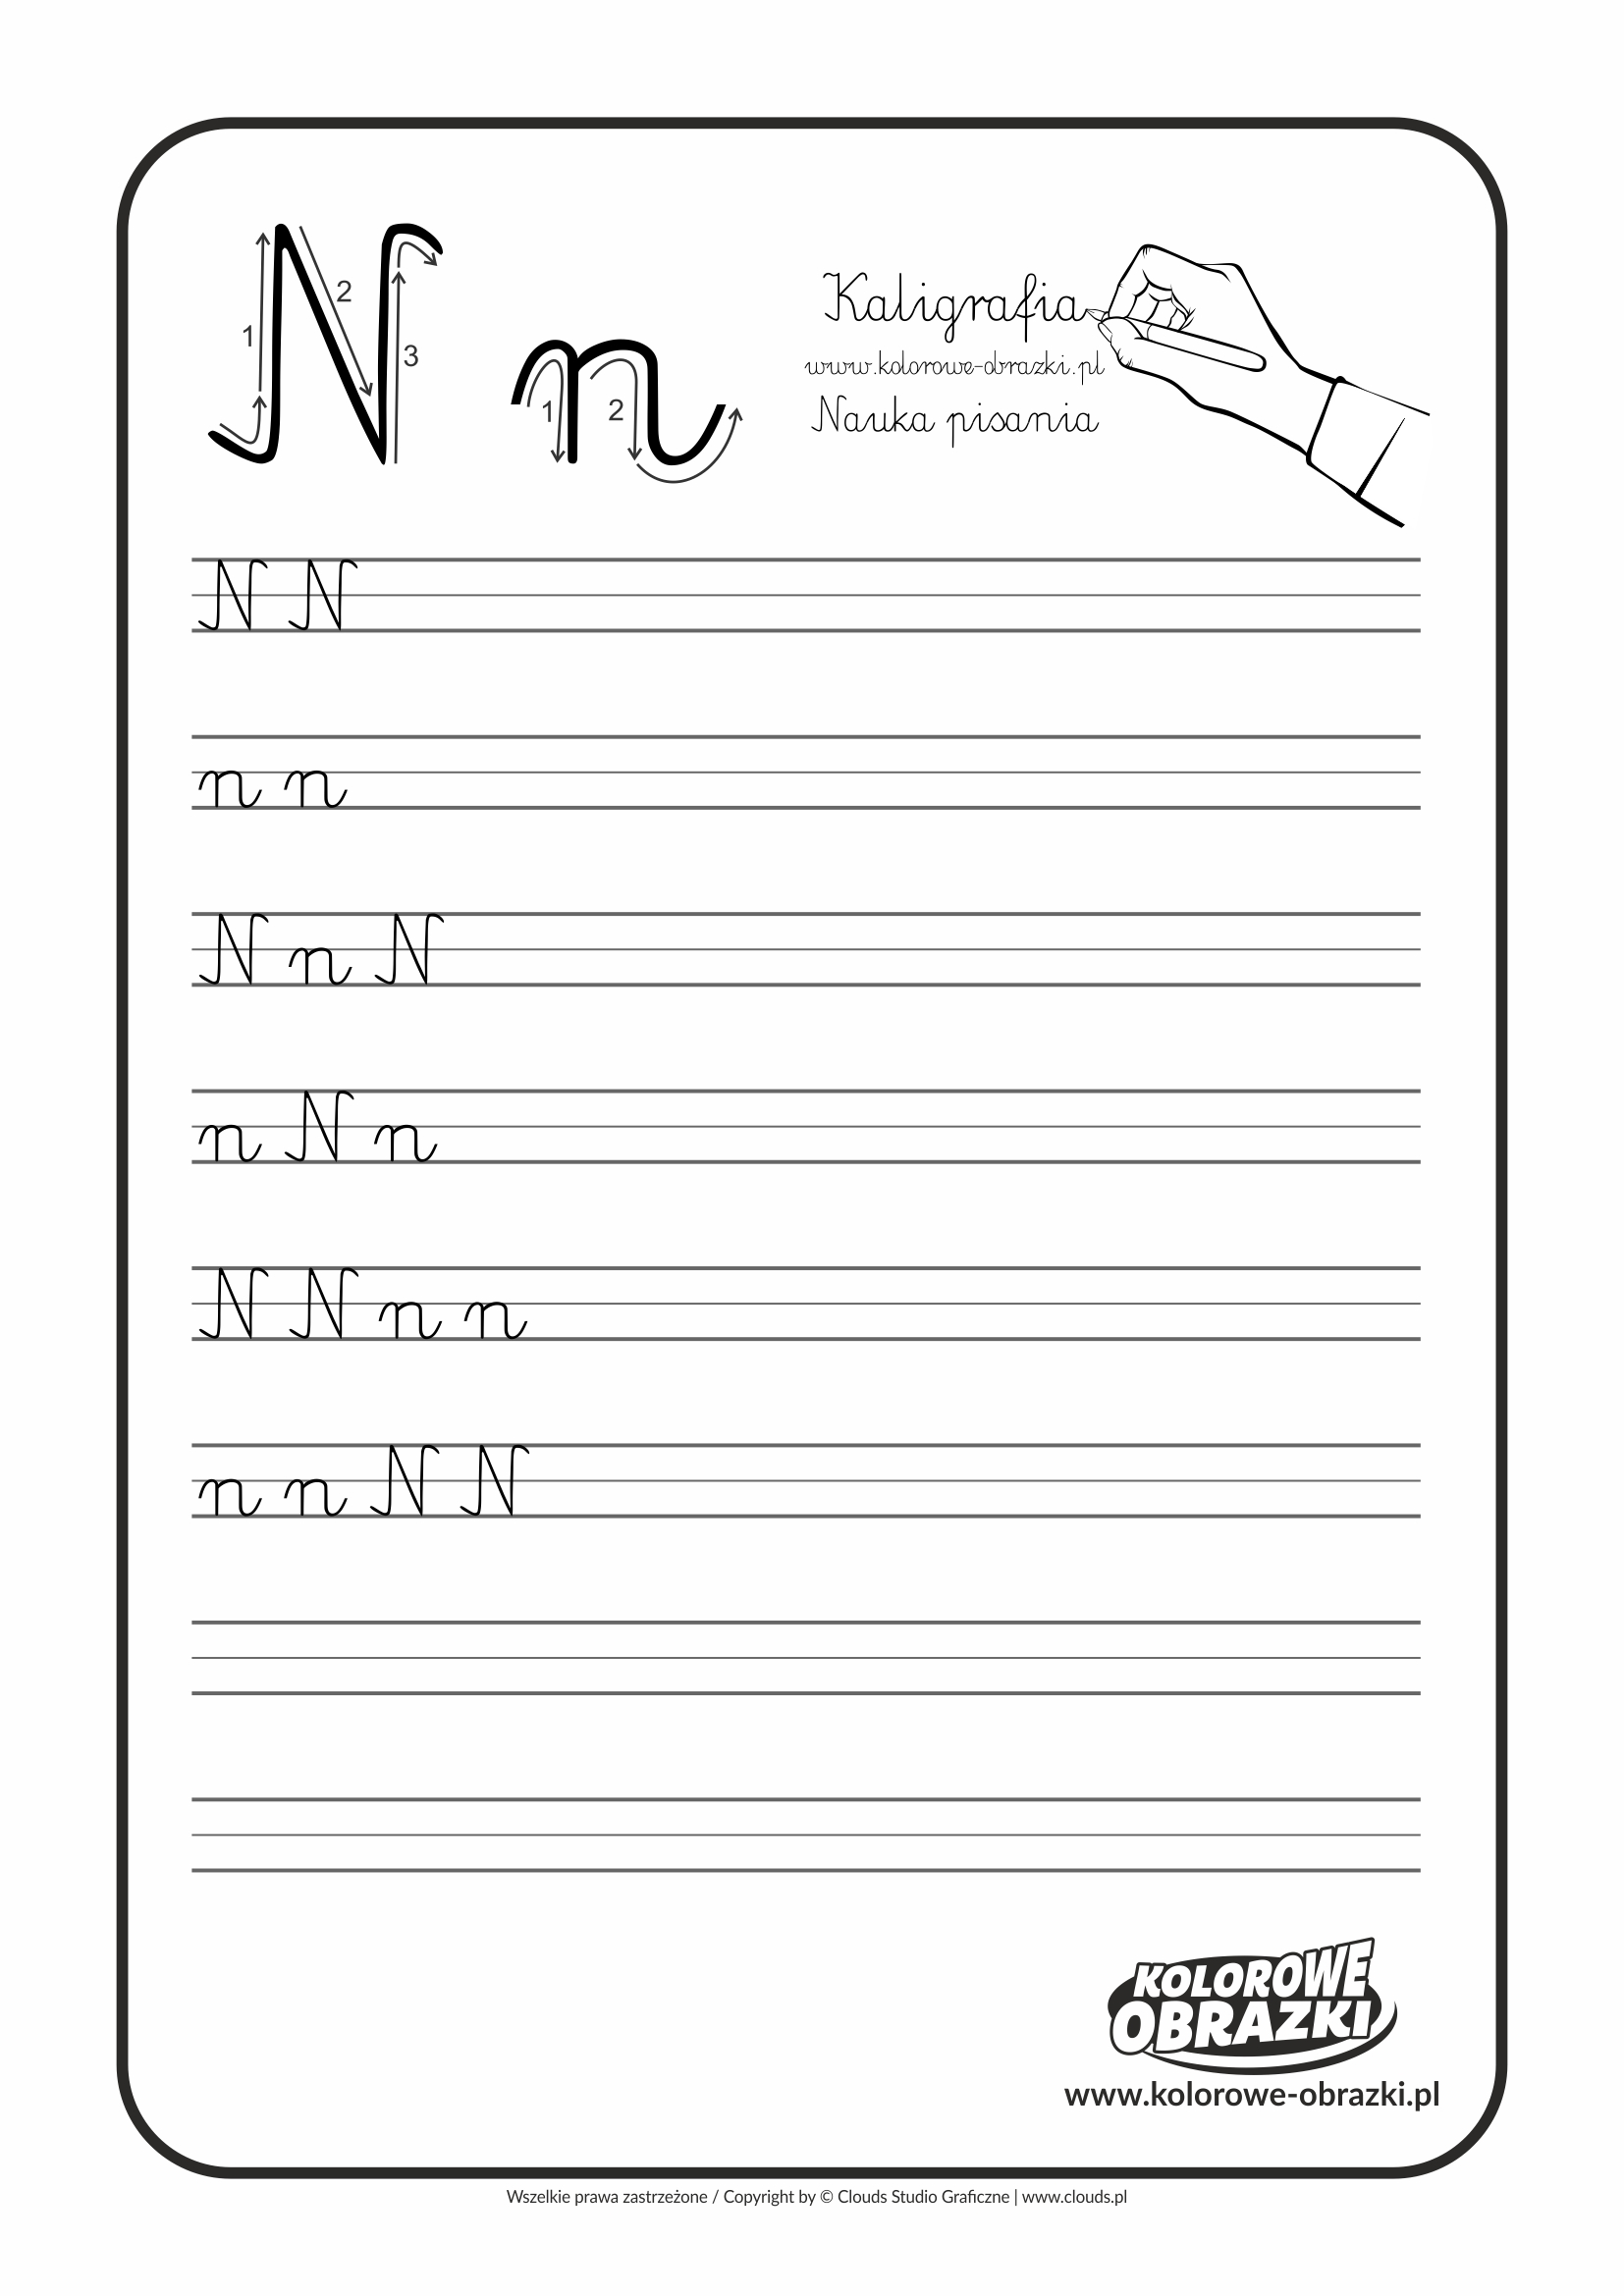 Kaligrafia dla dzieci - Ćwiczenia kaligraficzne / Litera N. Nauka pisania litery N